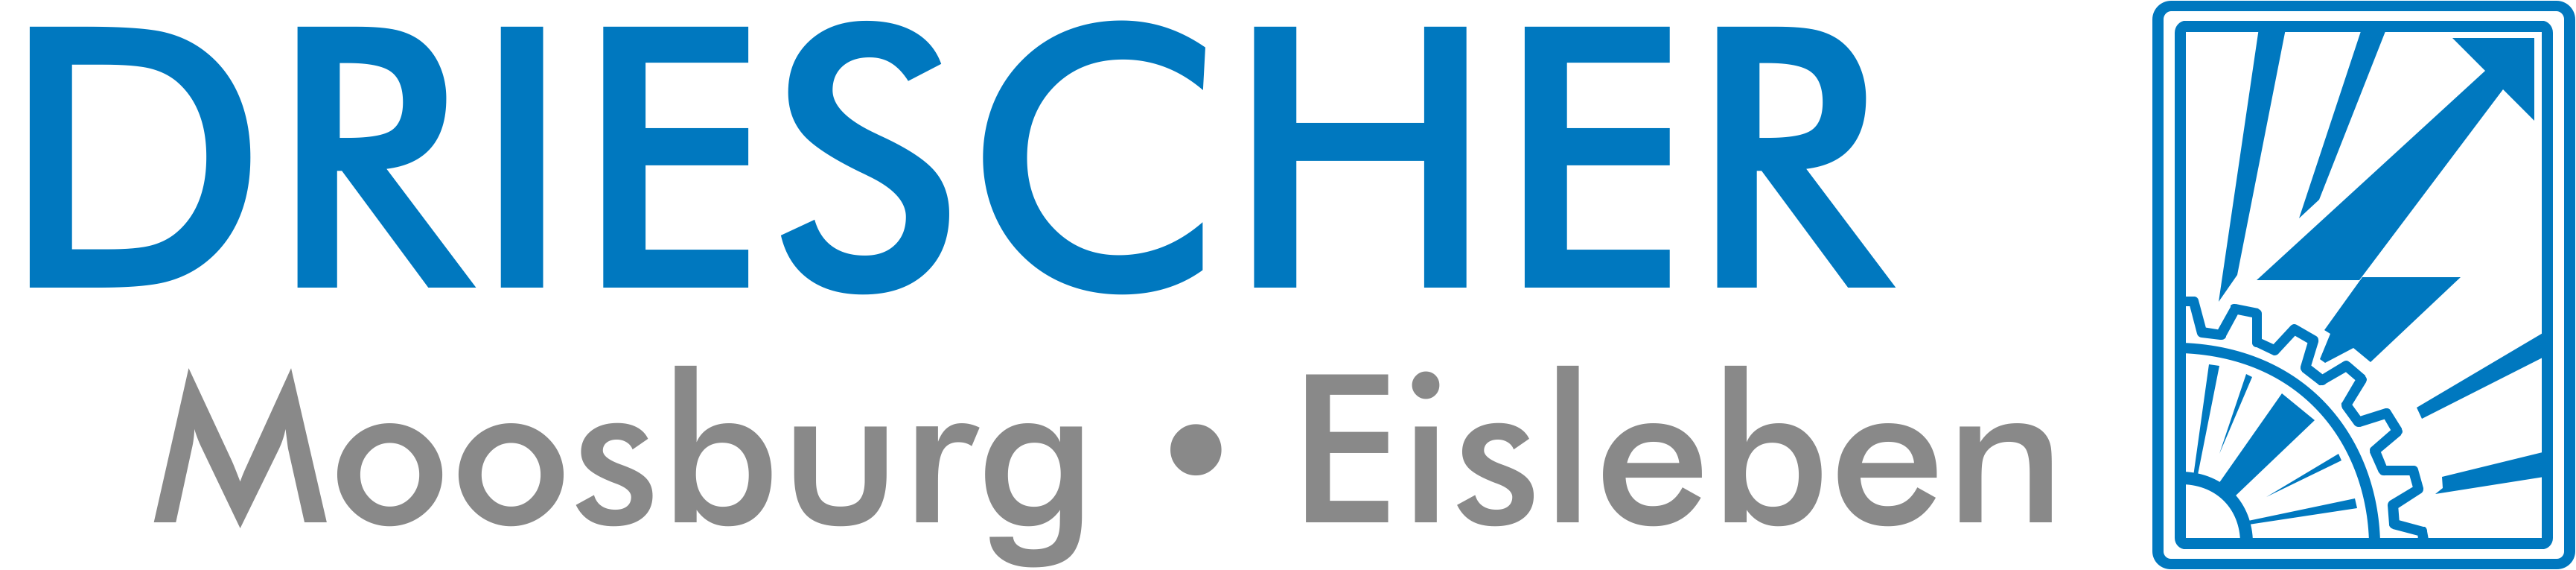 Driescher Moosburg Eisleben Logo